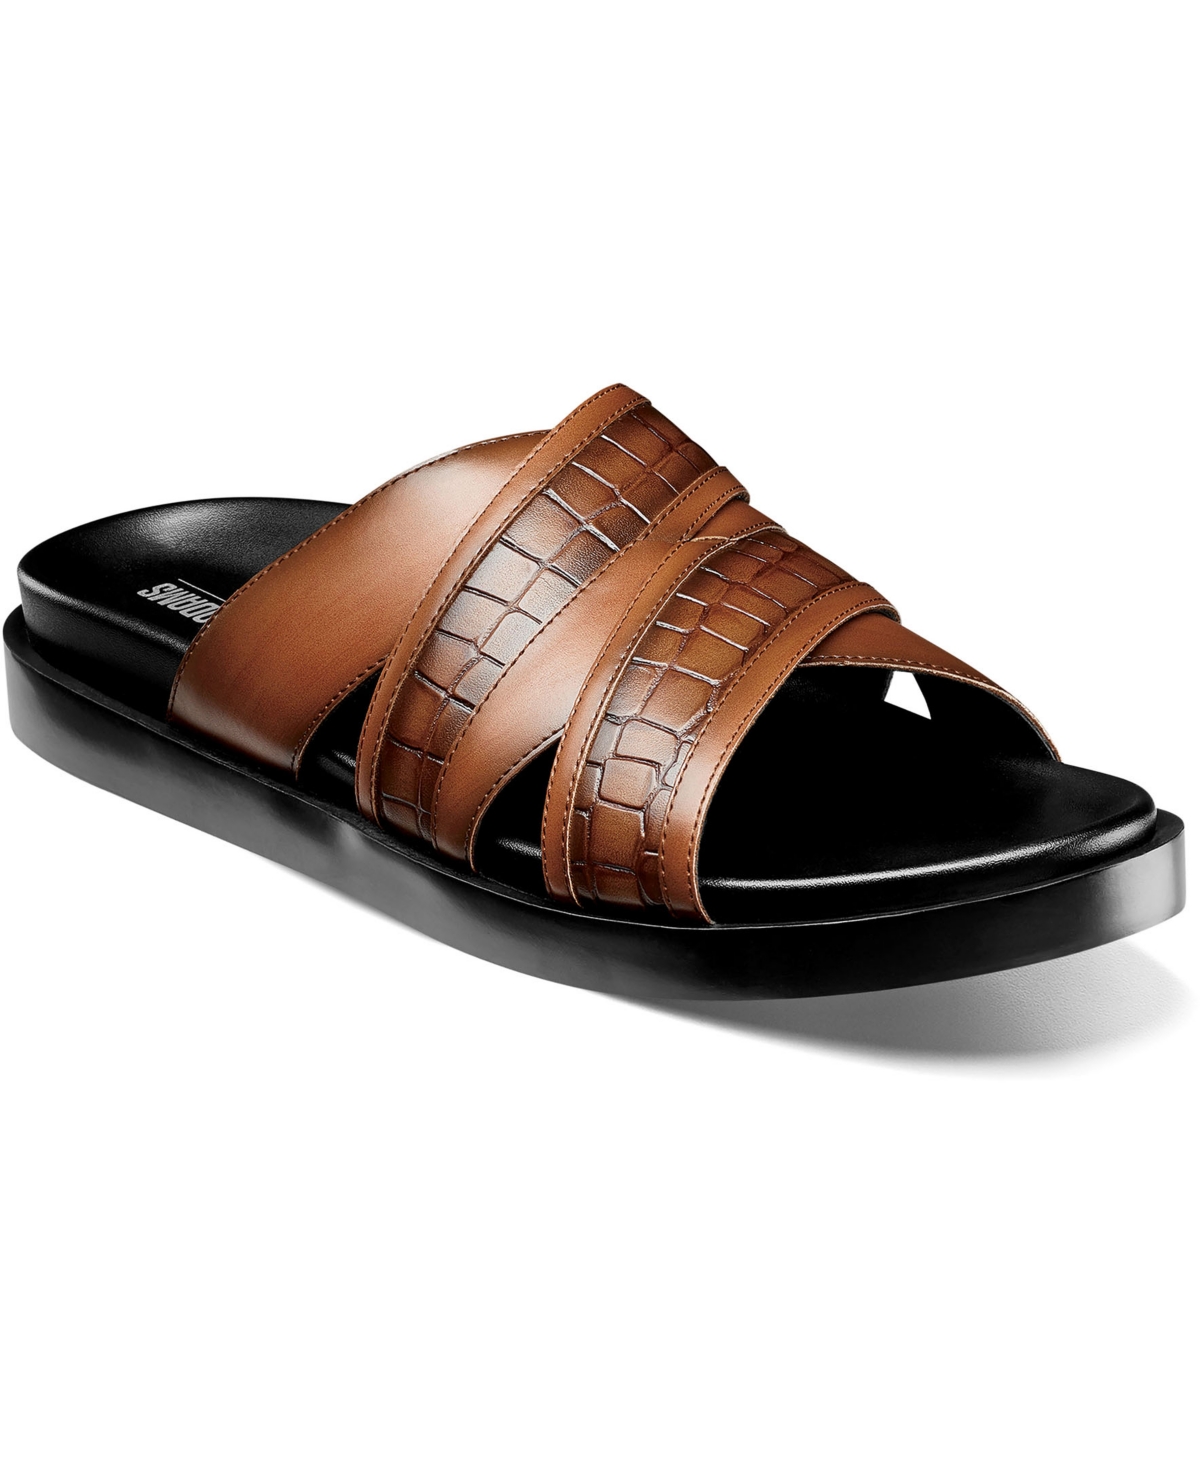 Men's Mondo Open Toe Slide Sandals - Cognac